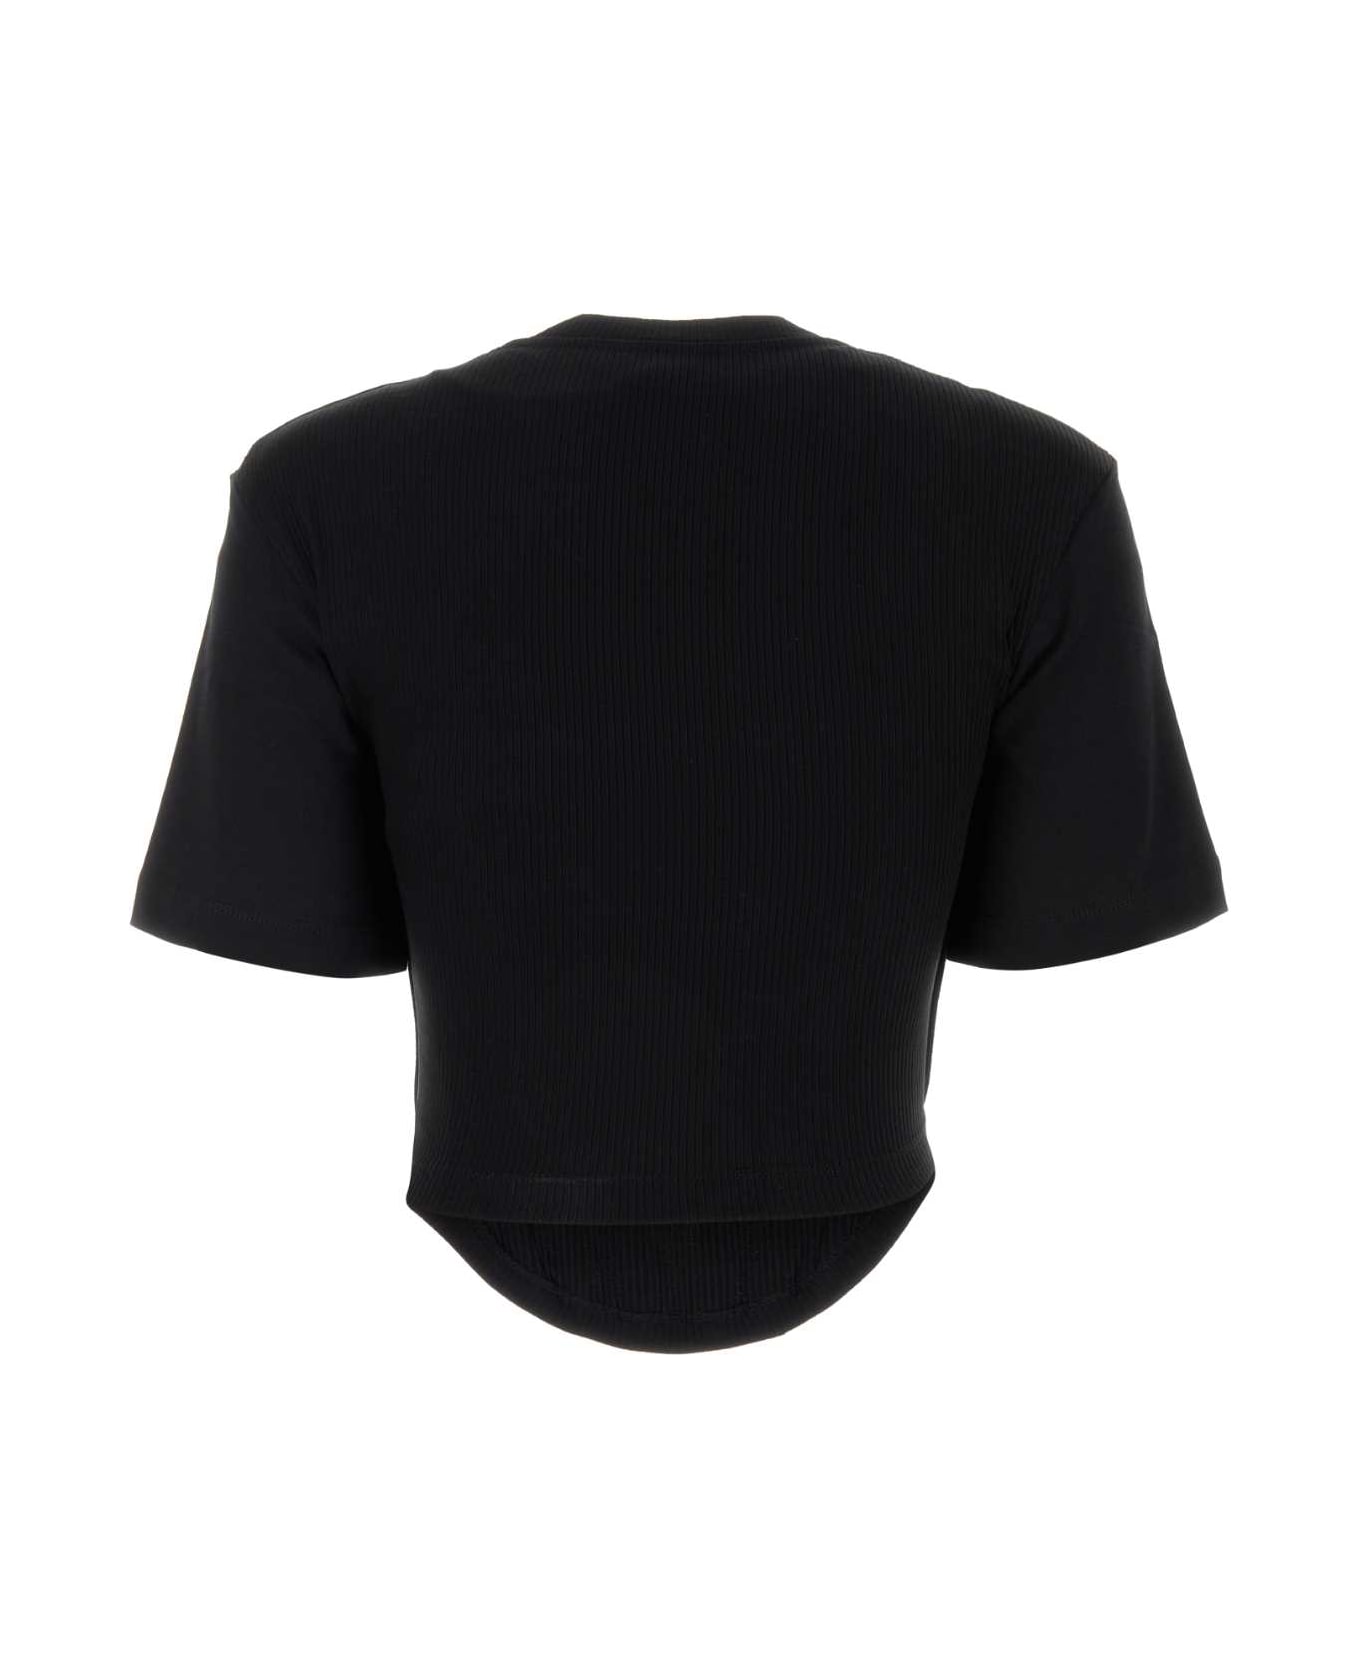 Dion Lee Black Cotton T-shirt - BLACK Tシャツ